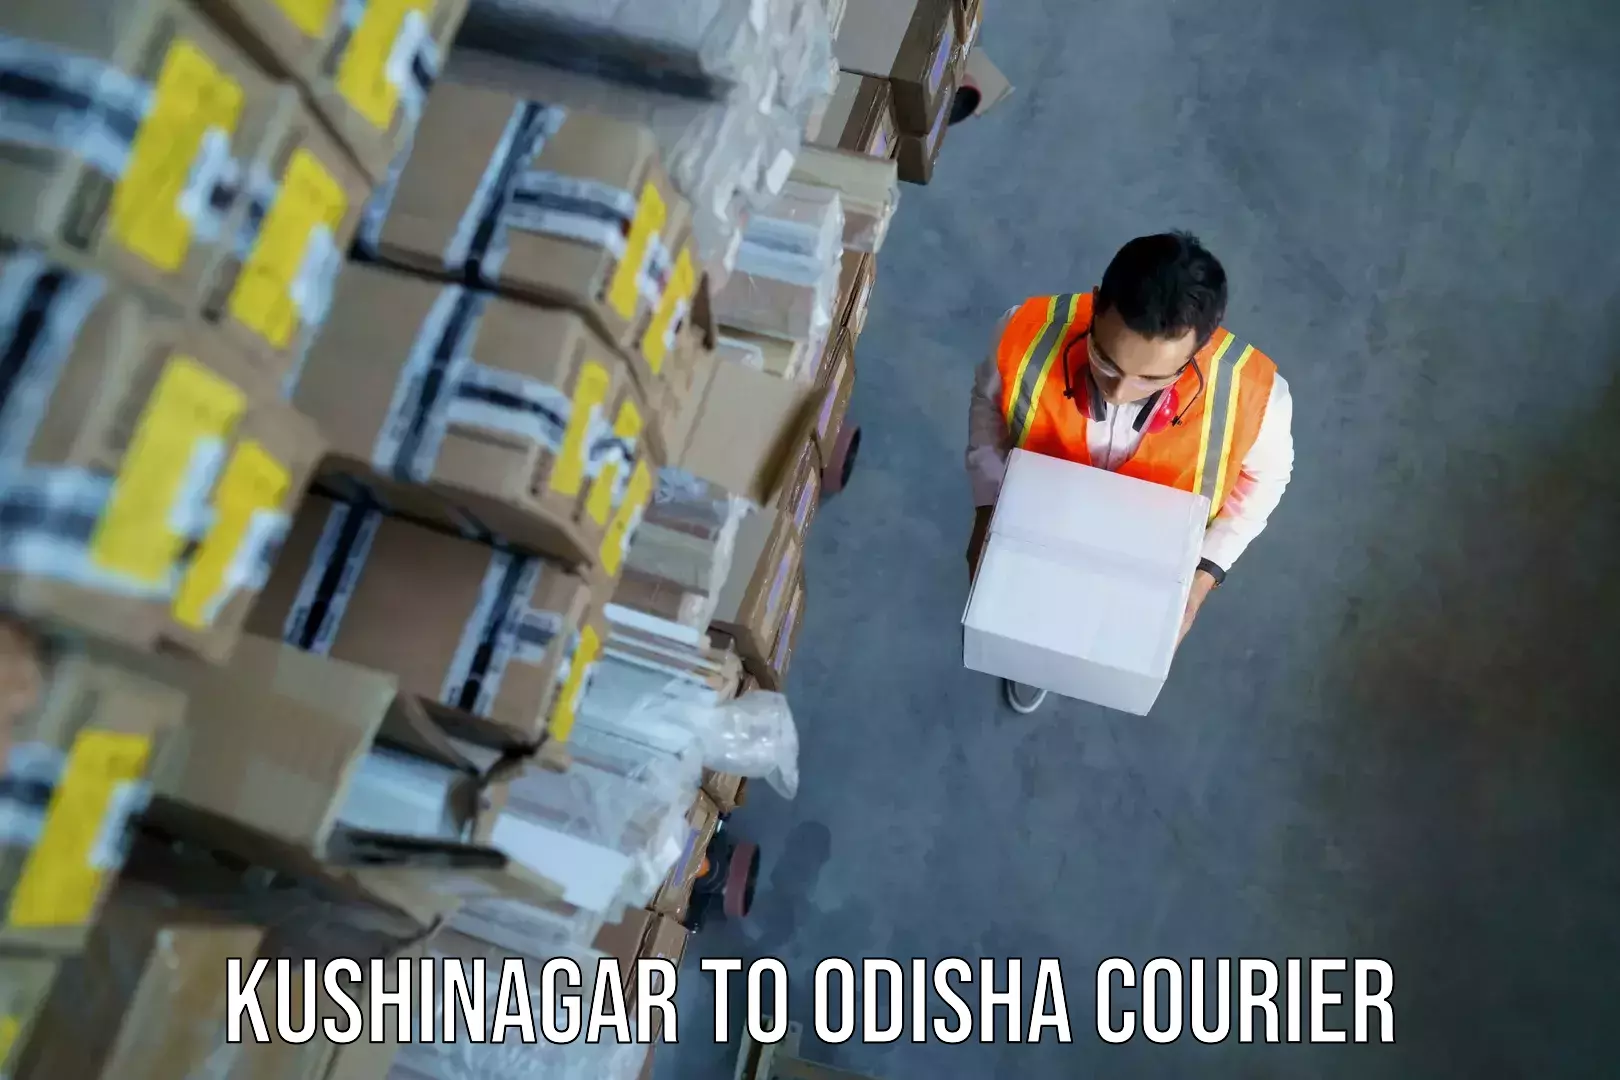 Luggage transport company Kushinagar to Basta